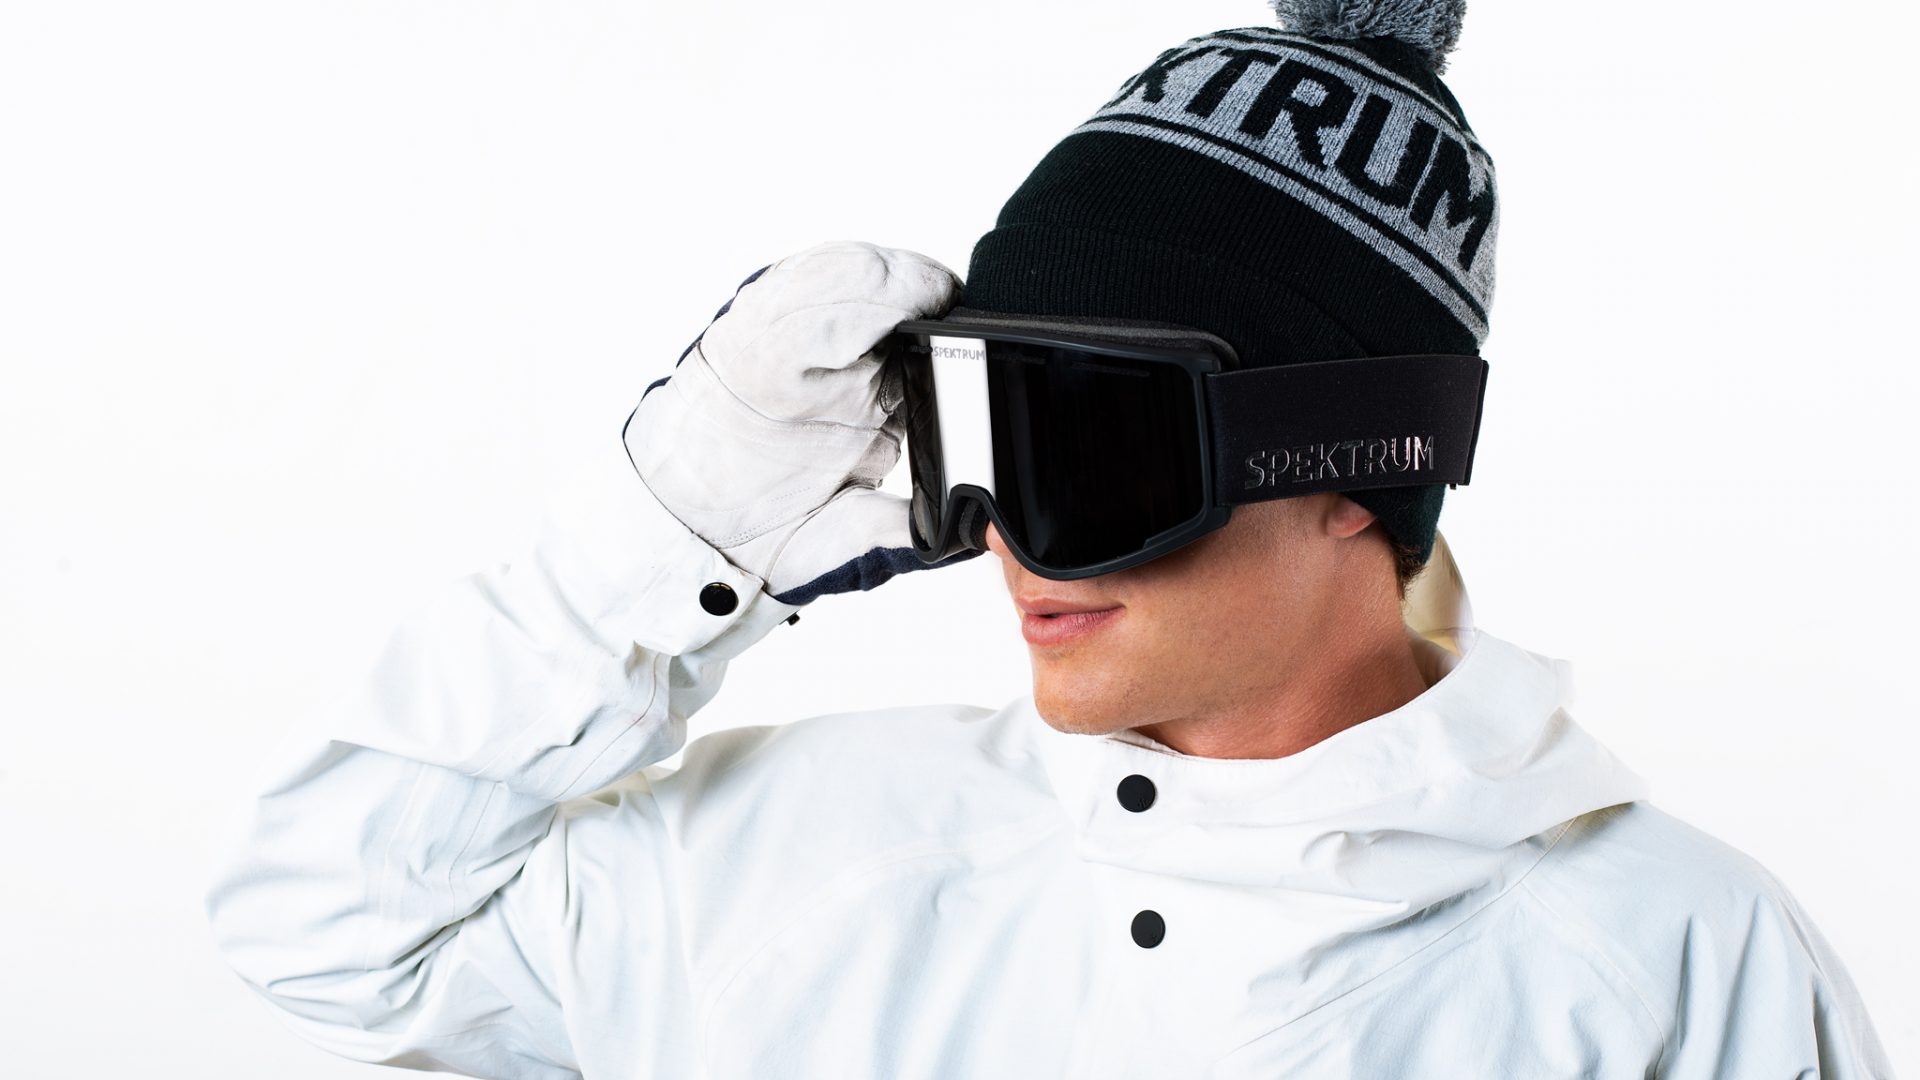 Sven Thorgren Spektrum Sponsorship Sweden Snowboarding